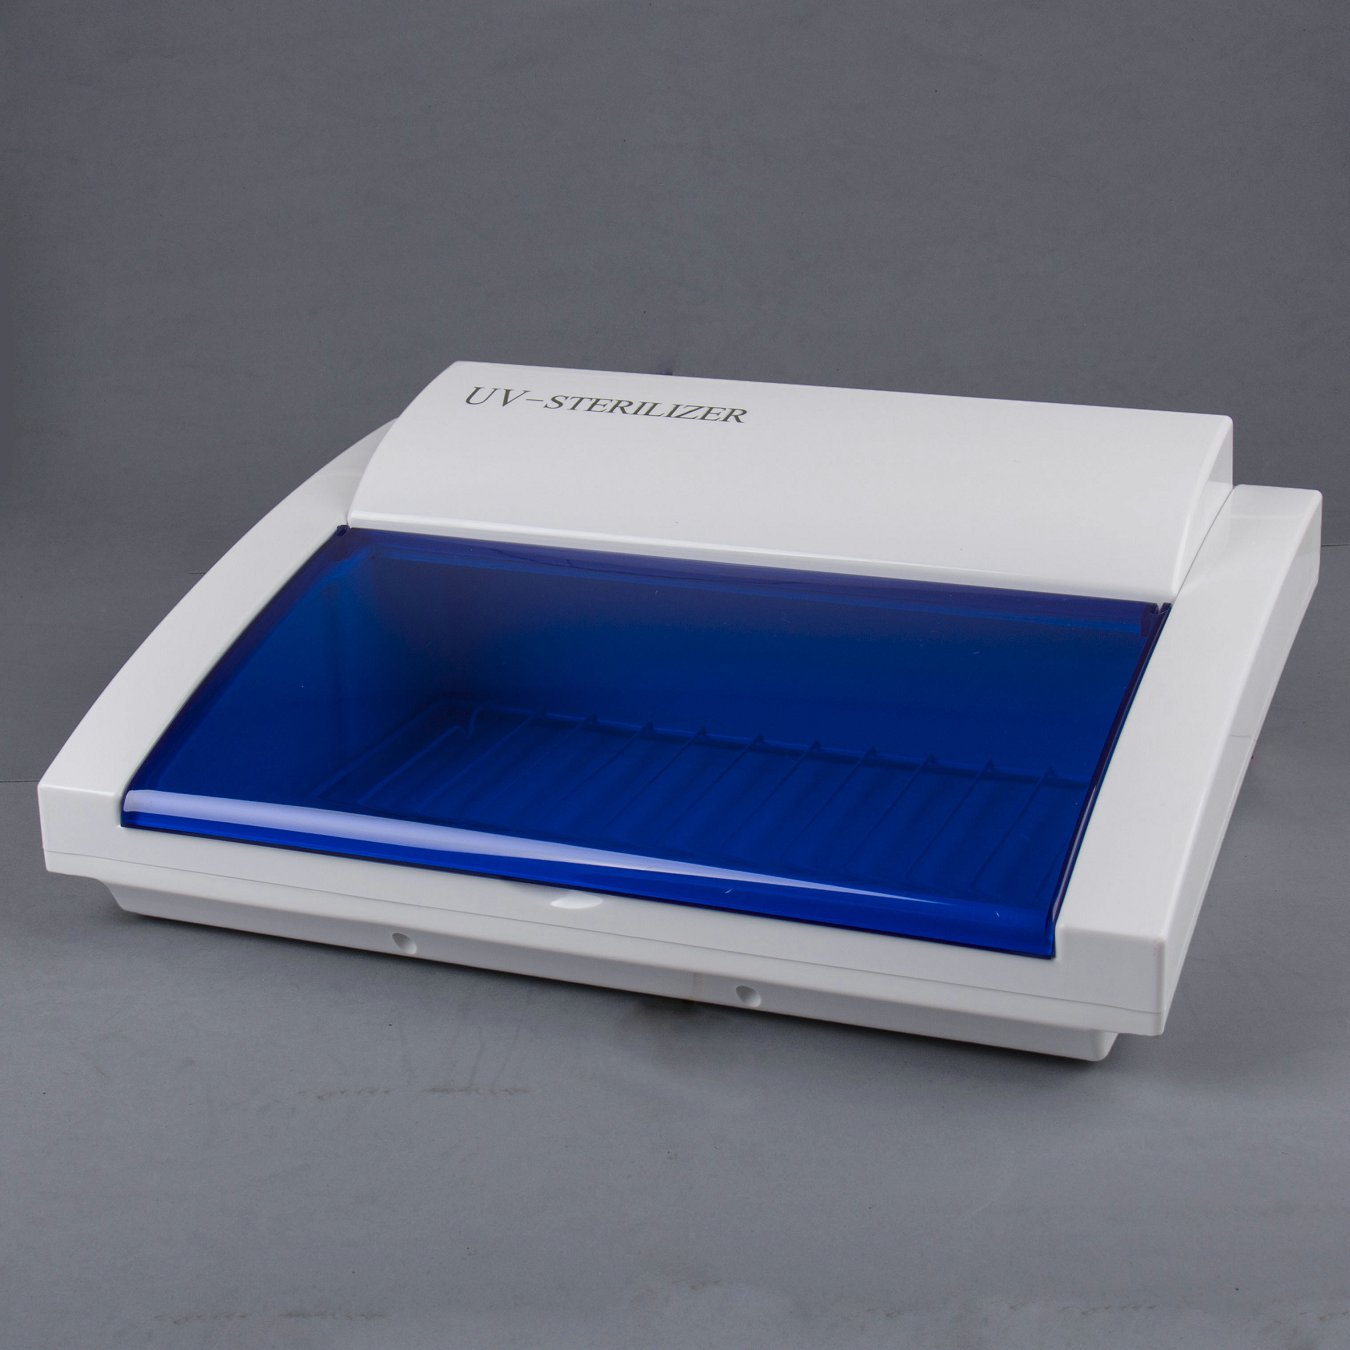 BY-NT-L11 8w UV Sterilizer box